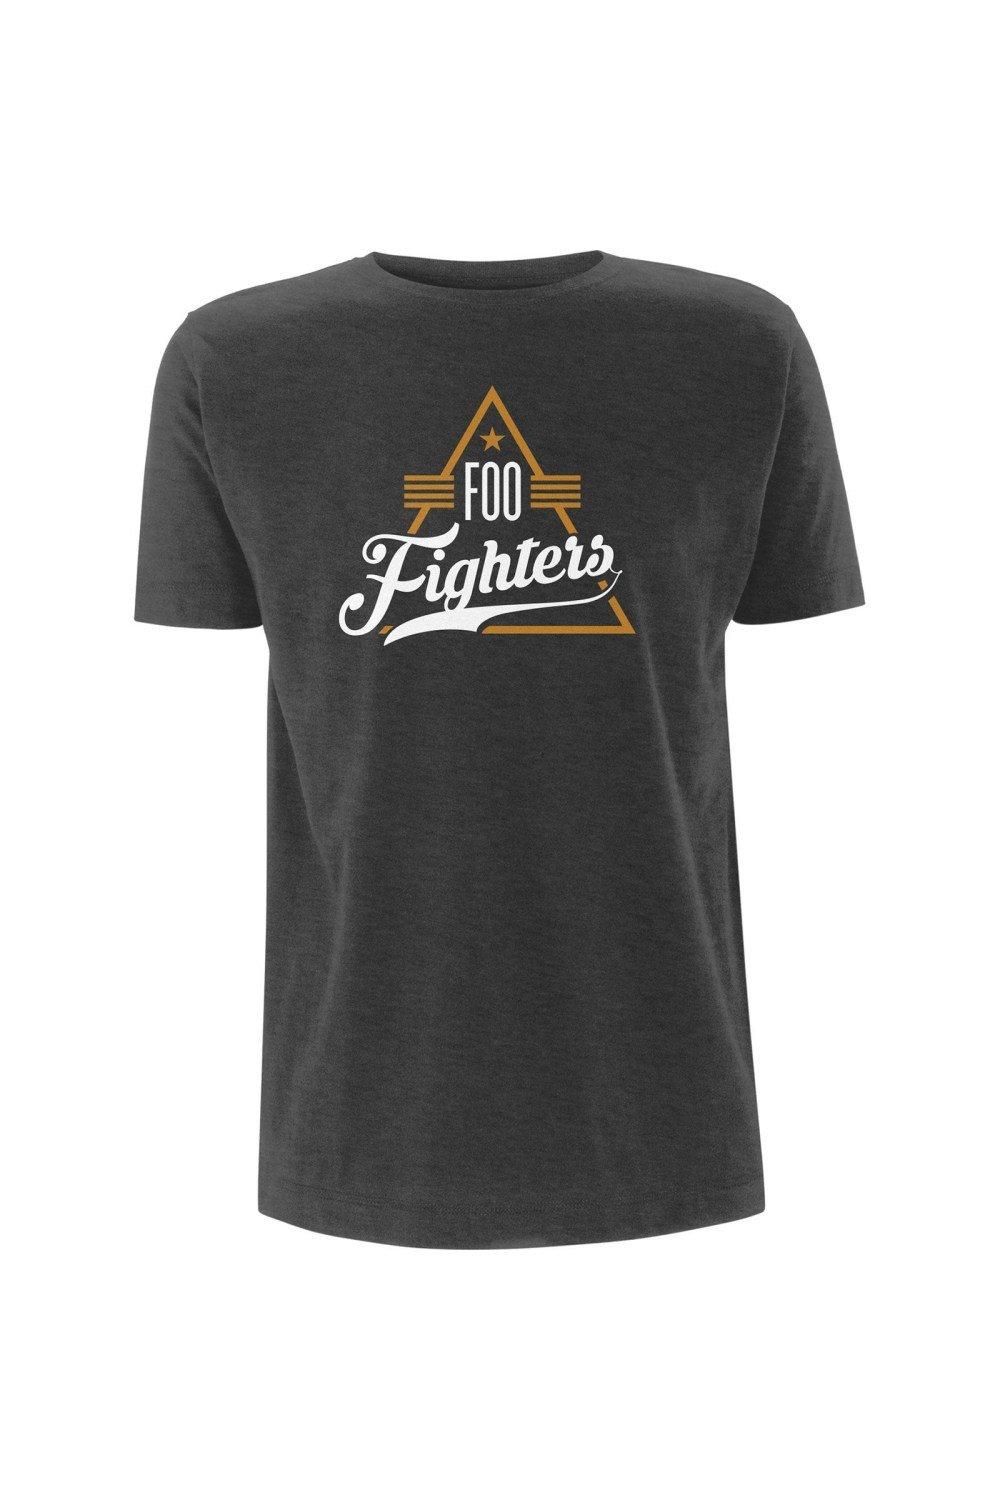 Треугольная футболка Foo Fighters, серый foo fighters foo fighters sonic highways